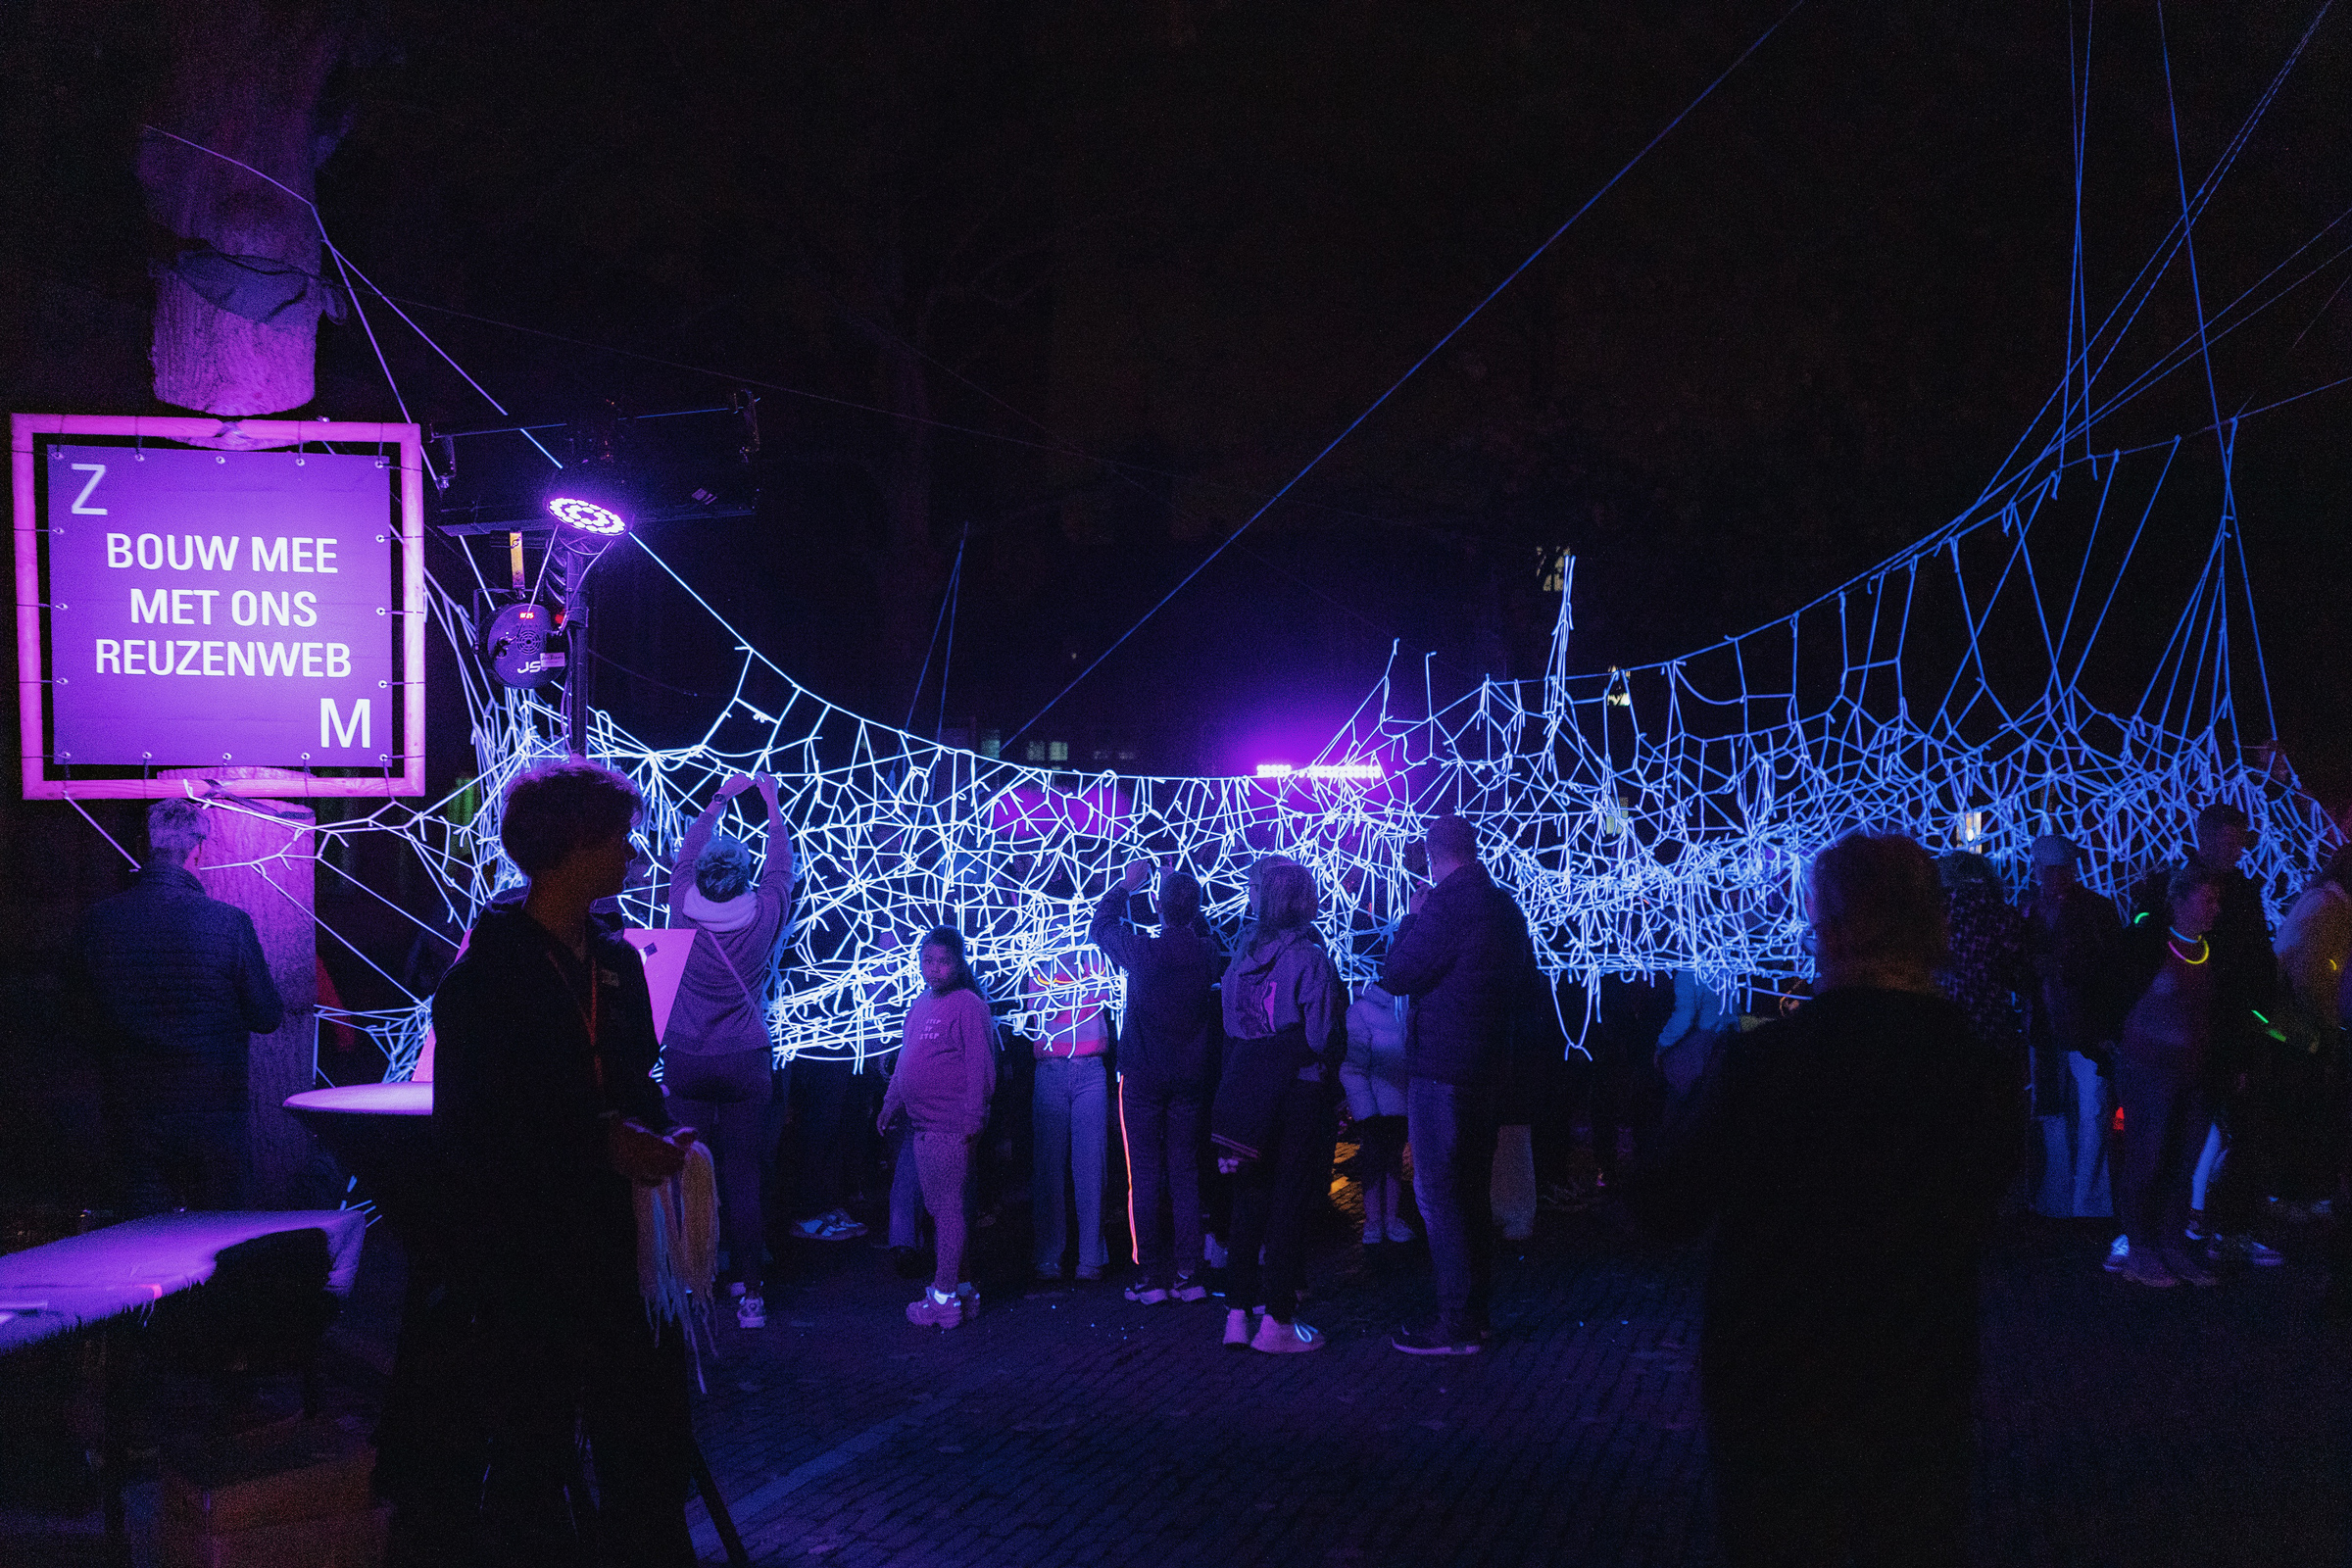 Bezoekers van de N8vdN8 actief met het maken van een Glow in the dark reuzenweb.